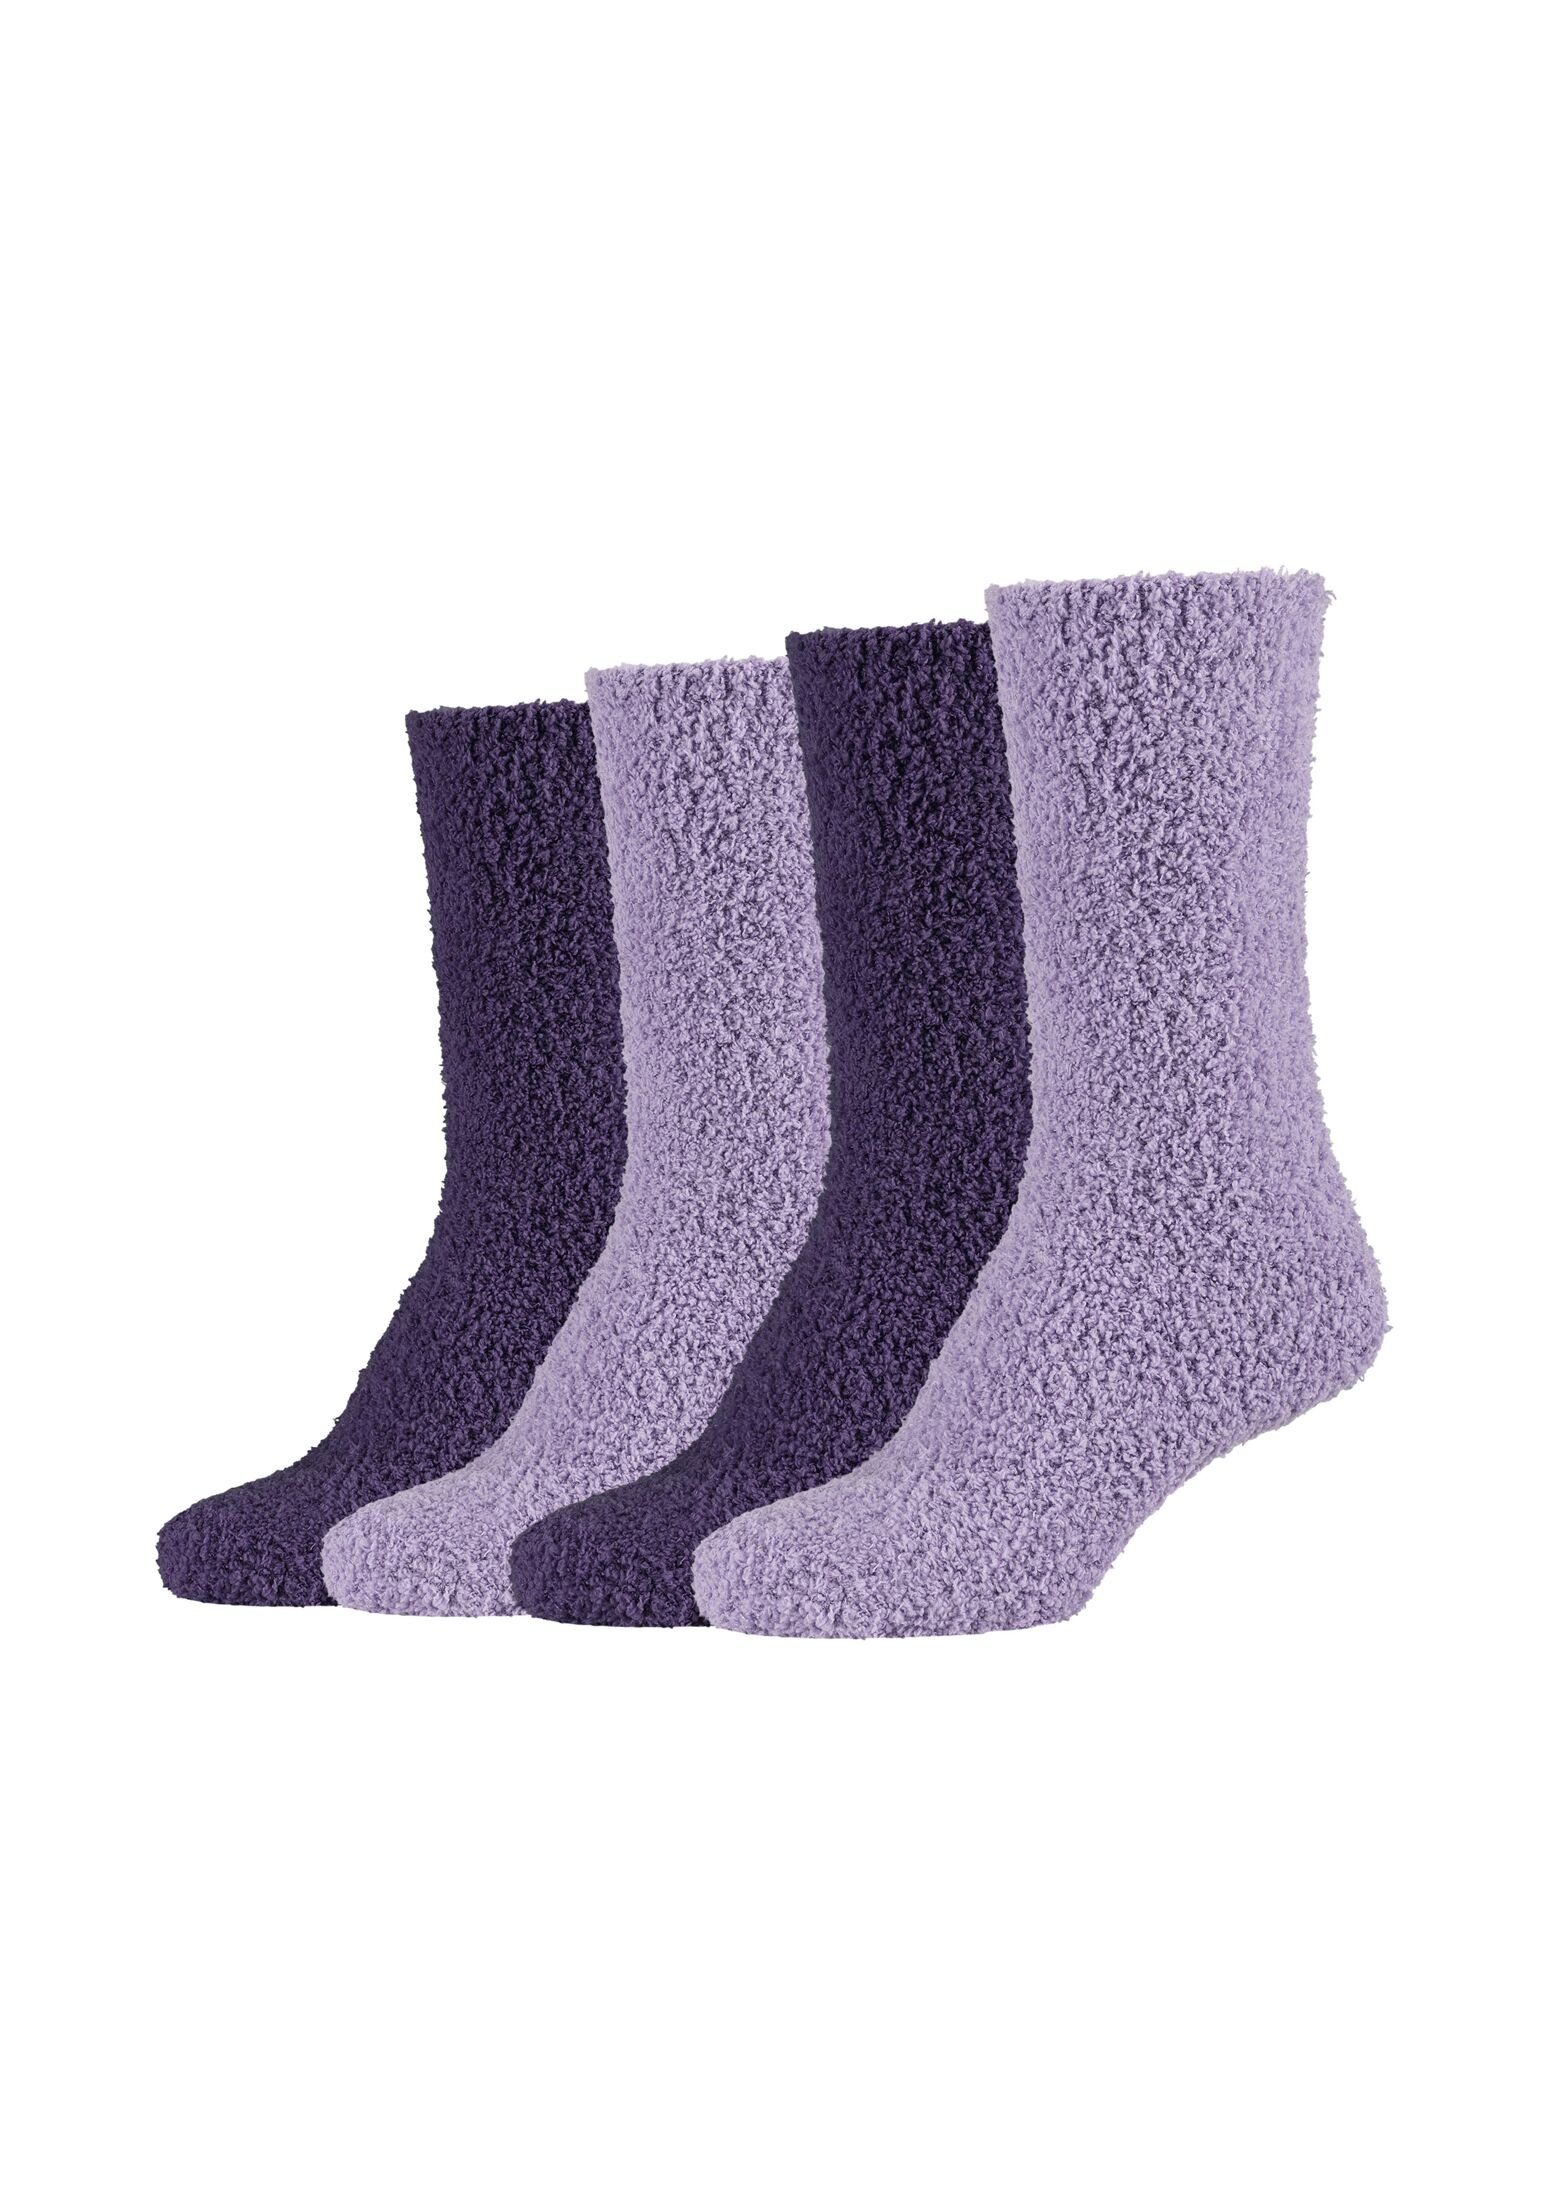 Warm Socken Damen Flauschig Cosy purple Socken mulberry Lang Kuschelsocken Camano